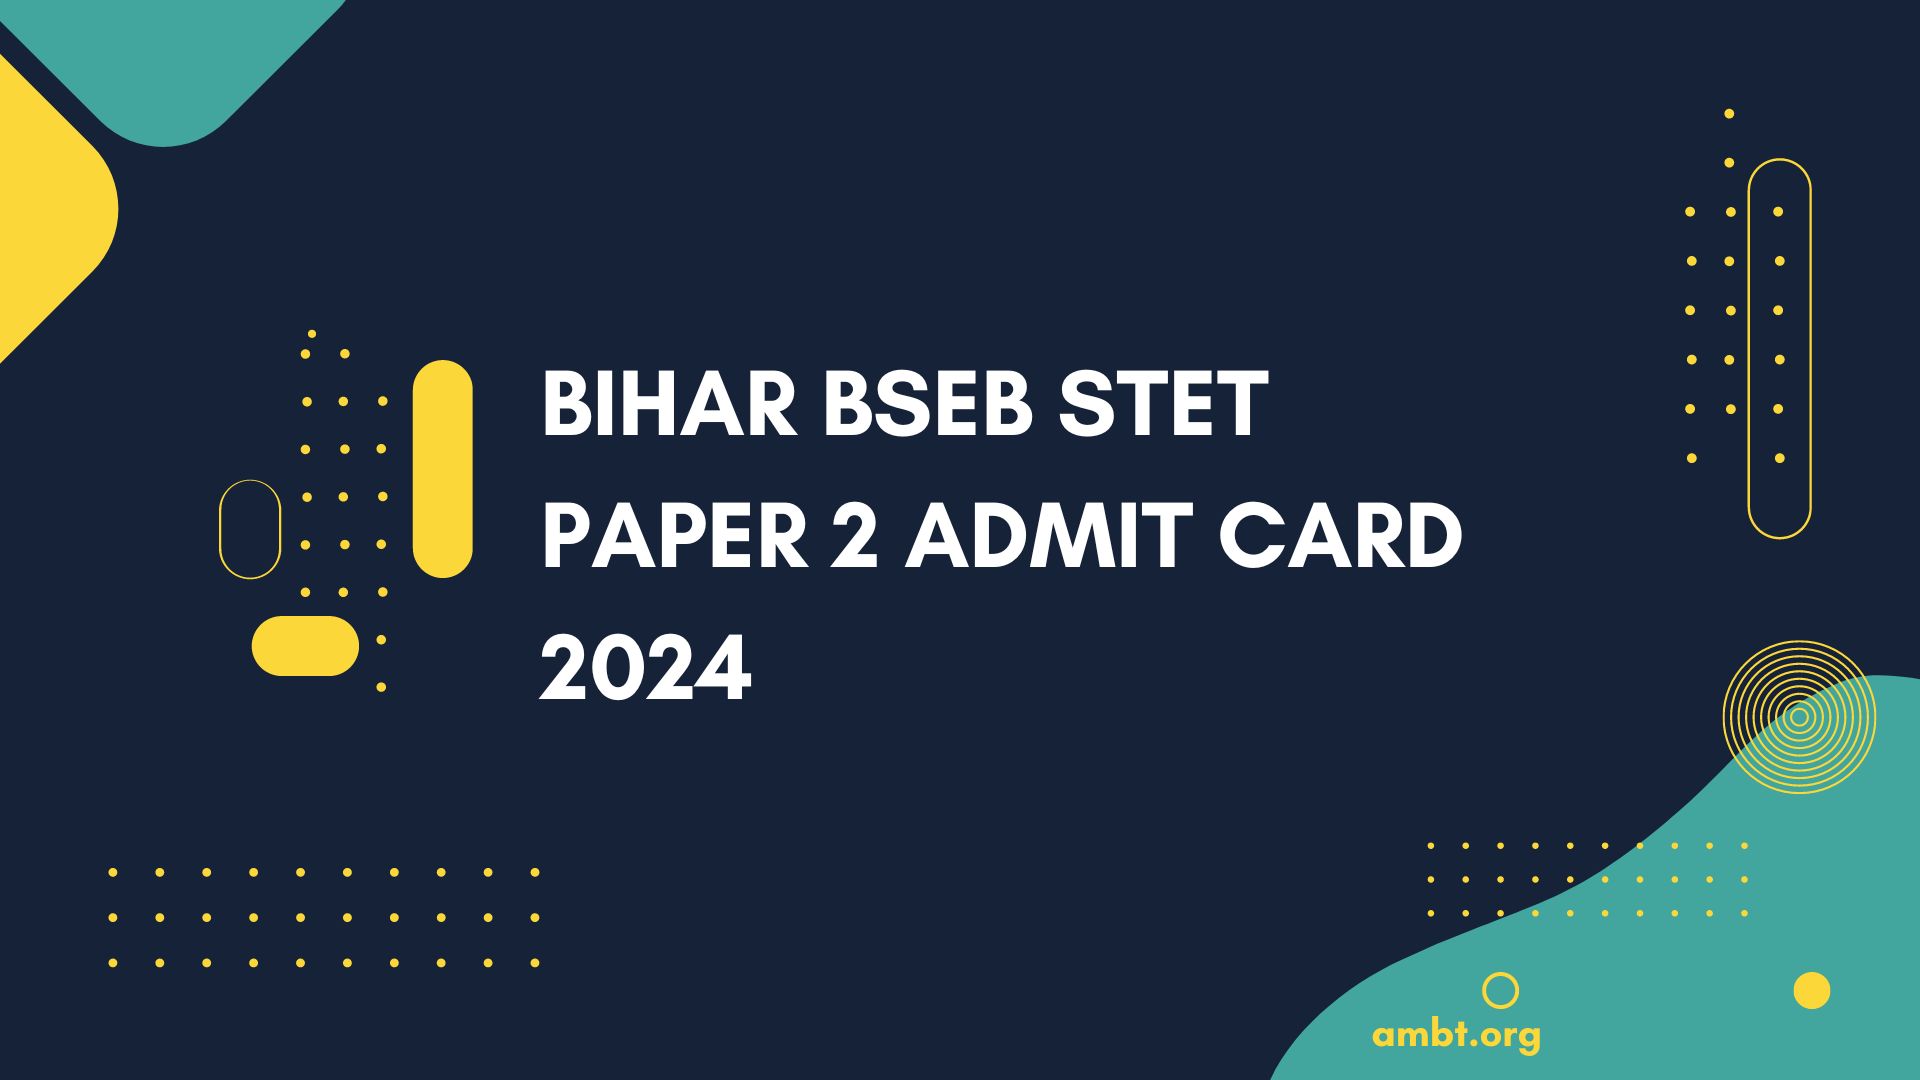 Bihar BSEB STET Paper 2 Admit Card 2024